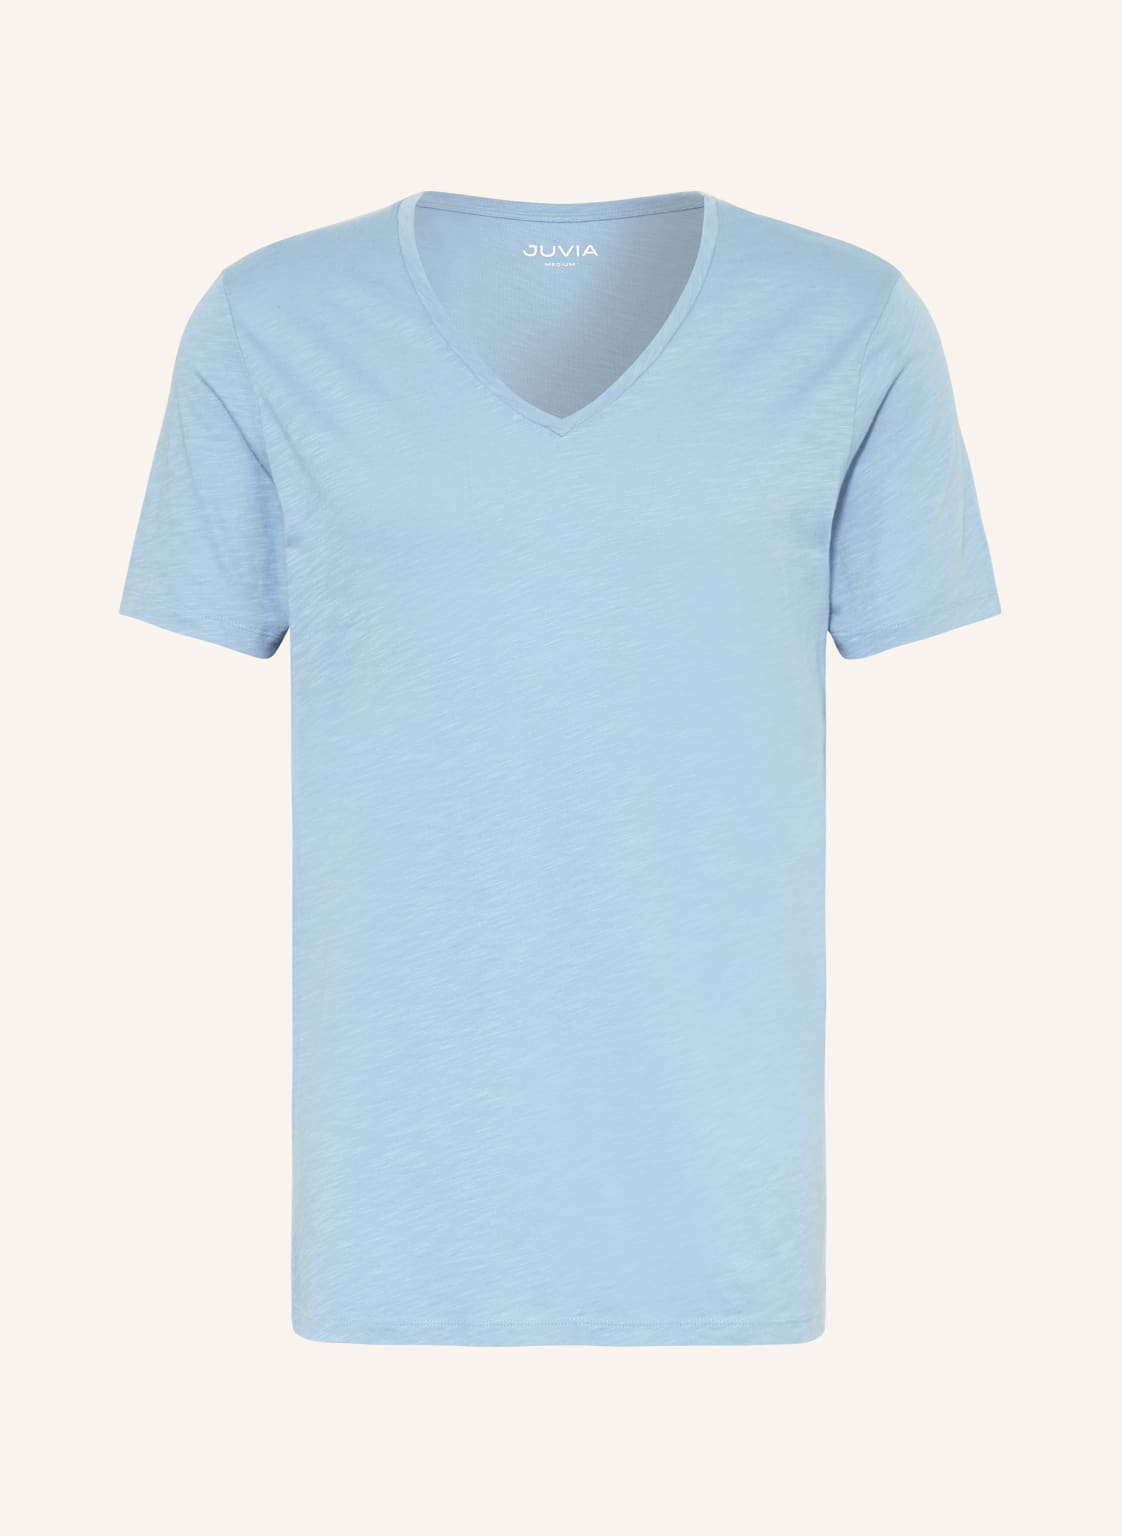 Juvia T-Shirt blau von Juvia